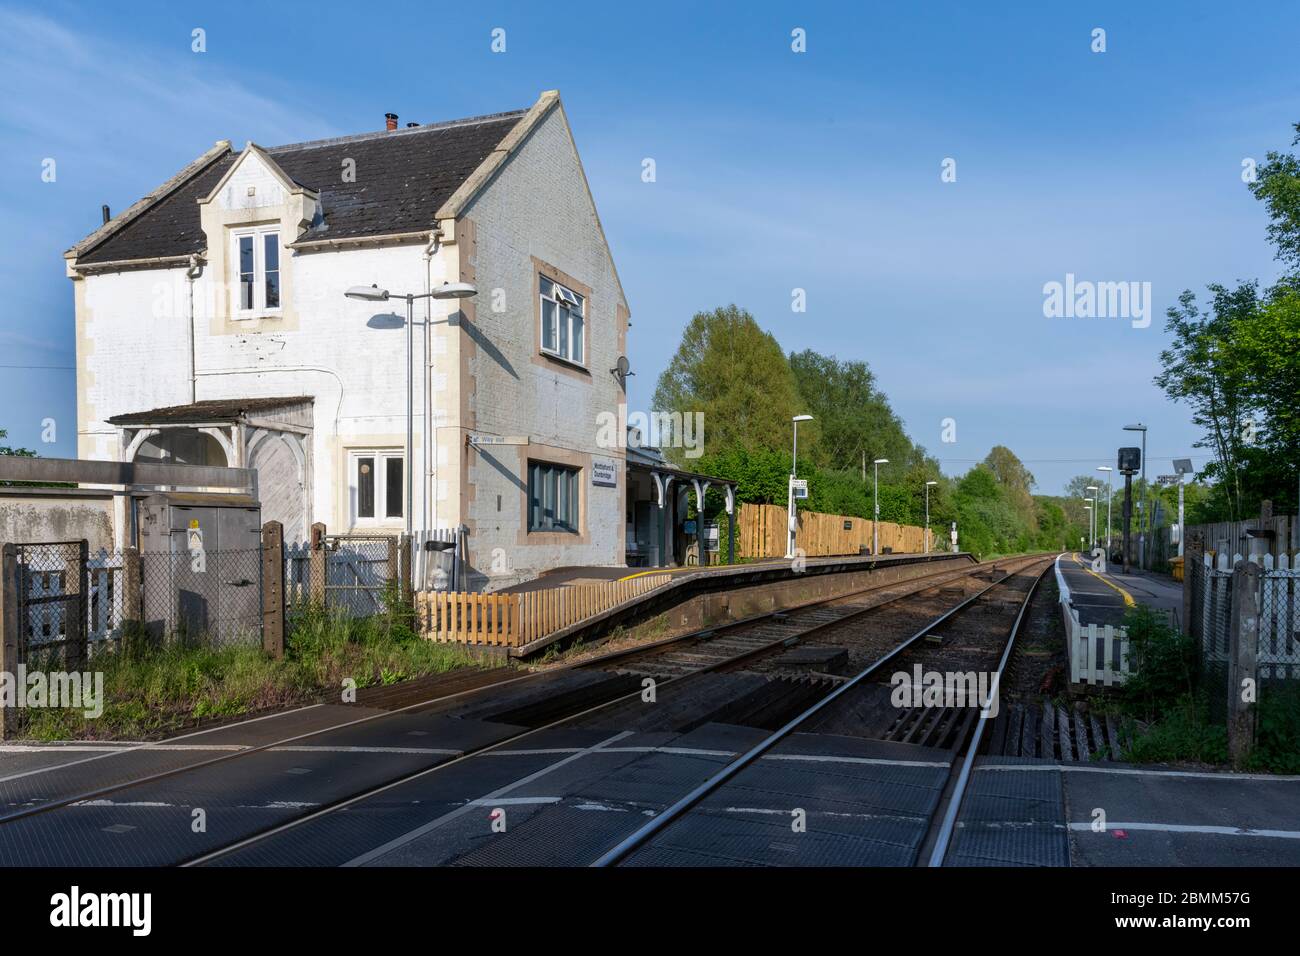 Mottisfont and Dunbridge Railway Station, Dunbridge, Hampshire, England, UK Stock Photo